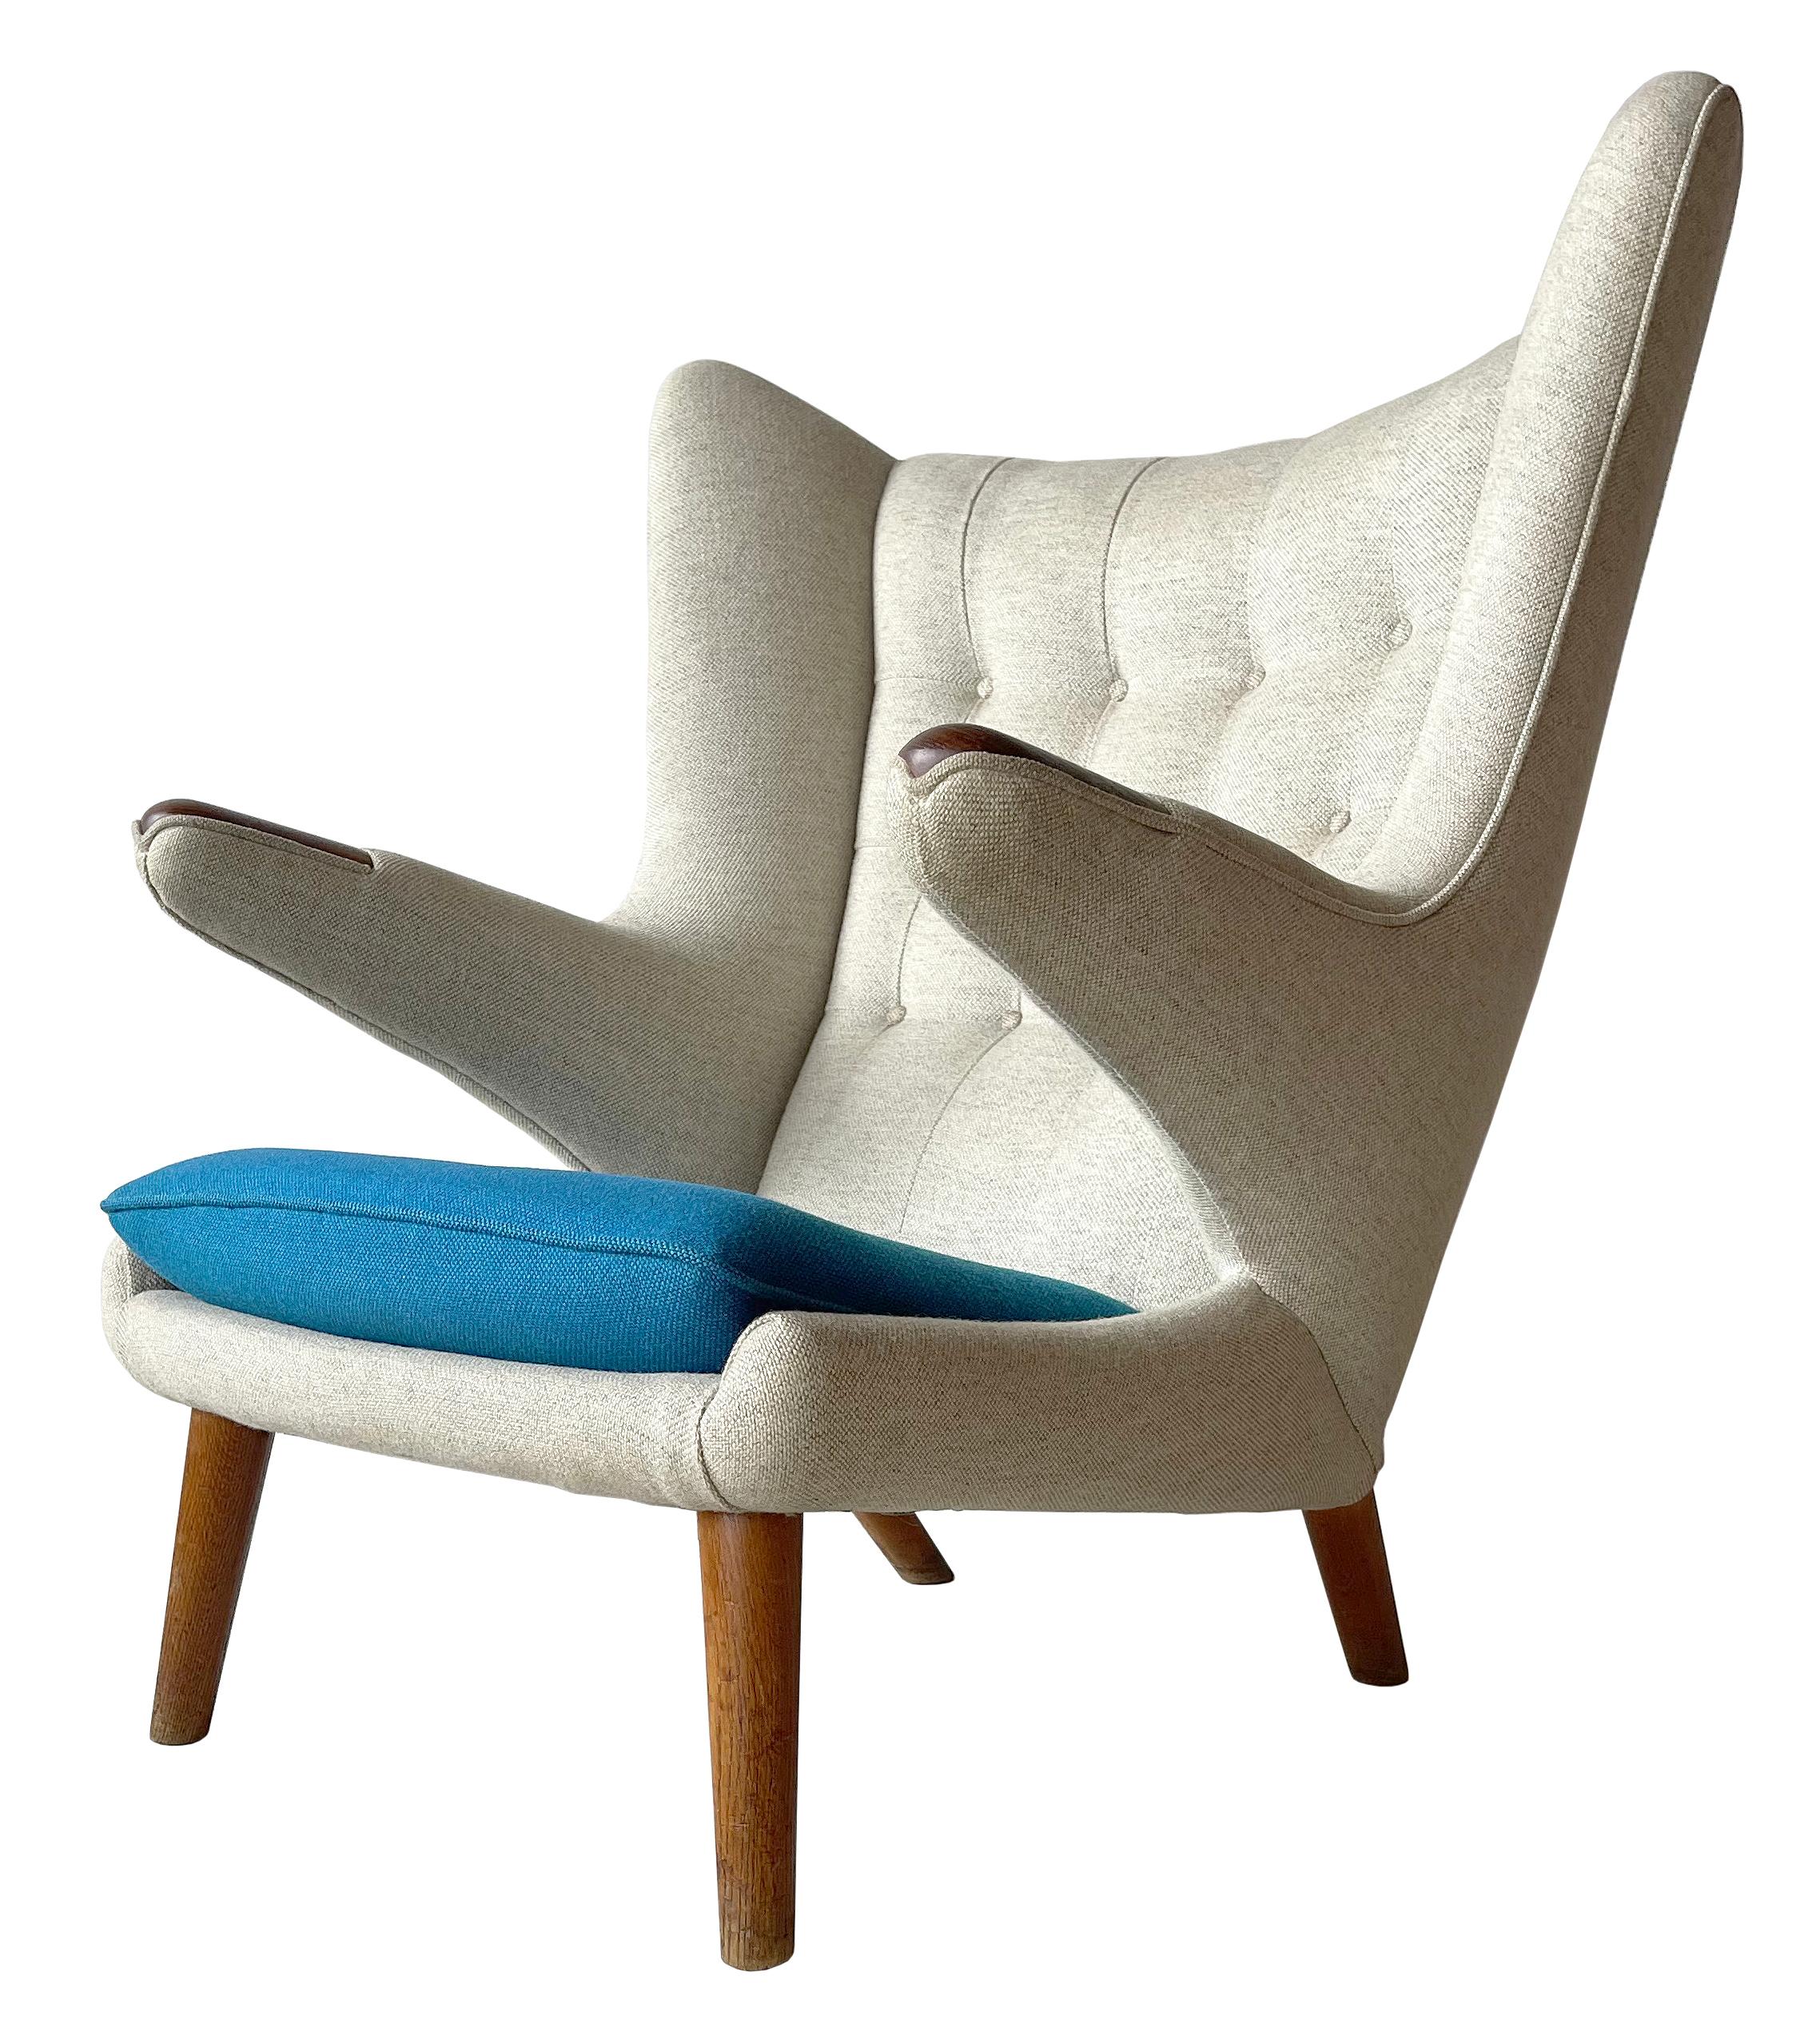 Une occasion rare d'acquérir un ensemble assorti des chaises les plus emblématiques et les plus célèbres de Hans Wegner. 
Les chaises 